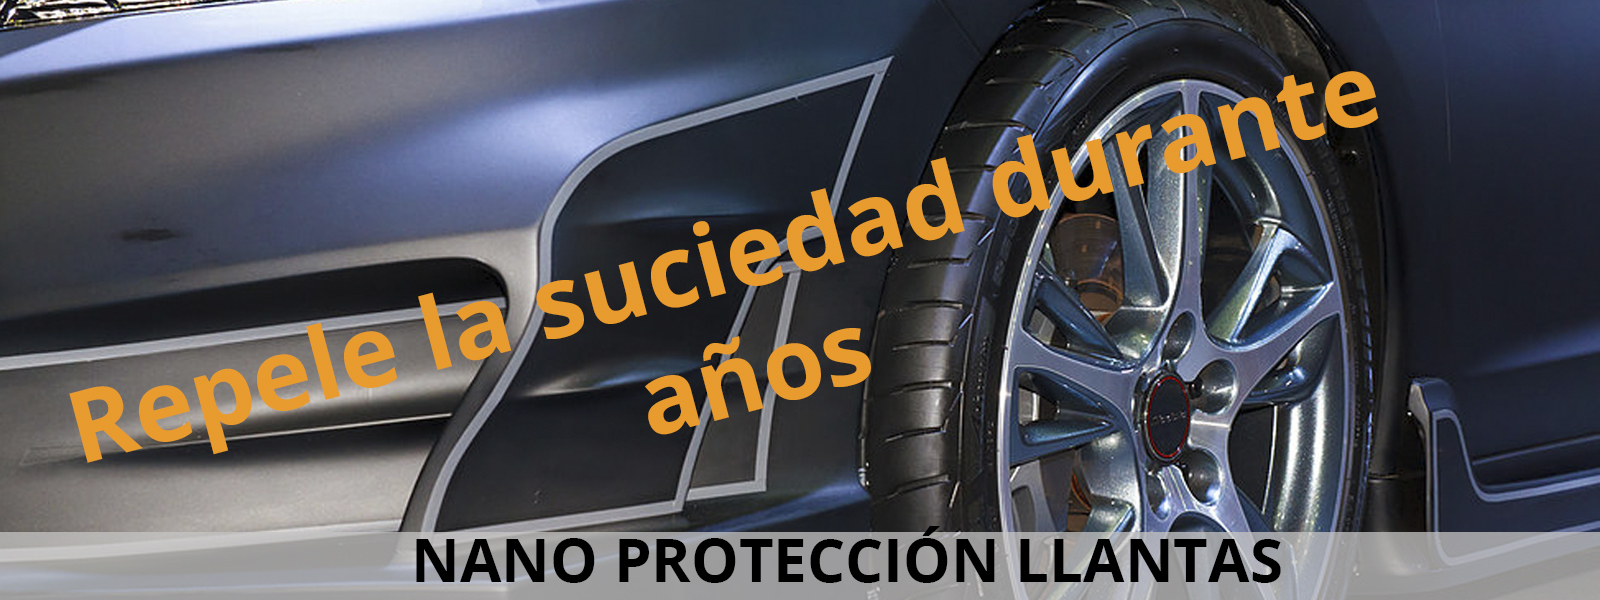 Nano_proteccion_llantas